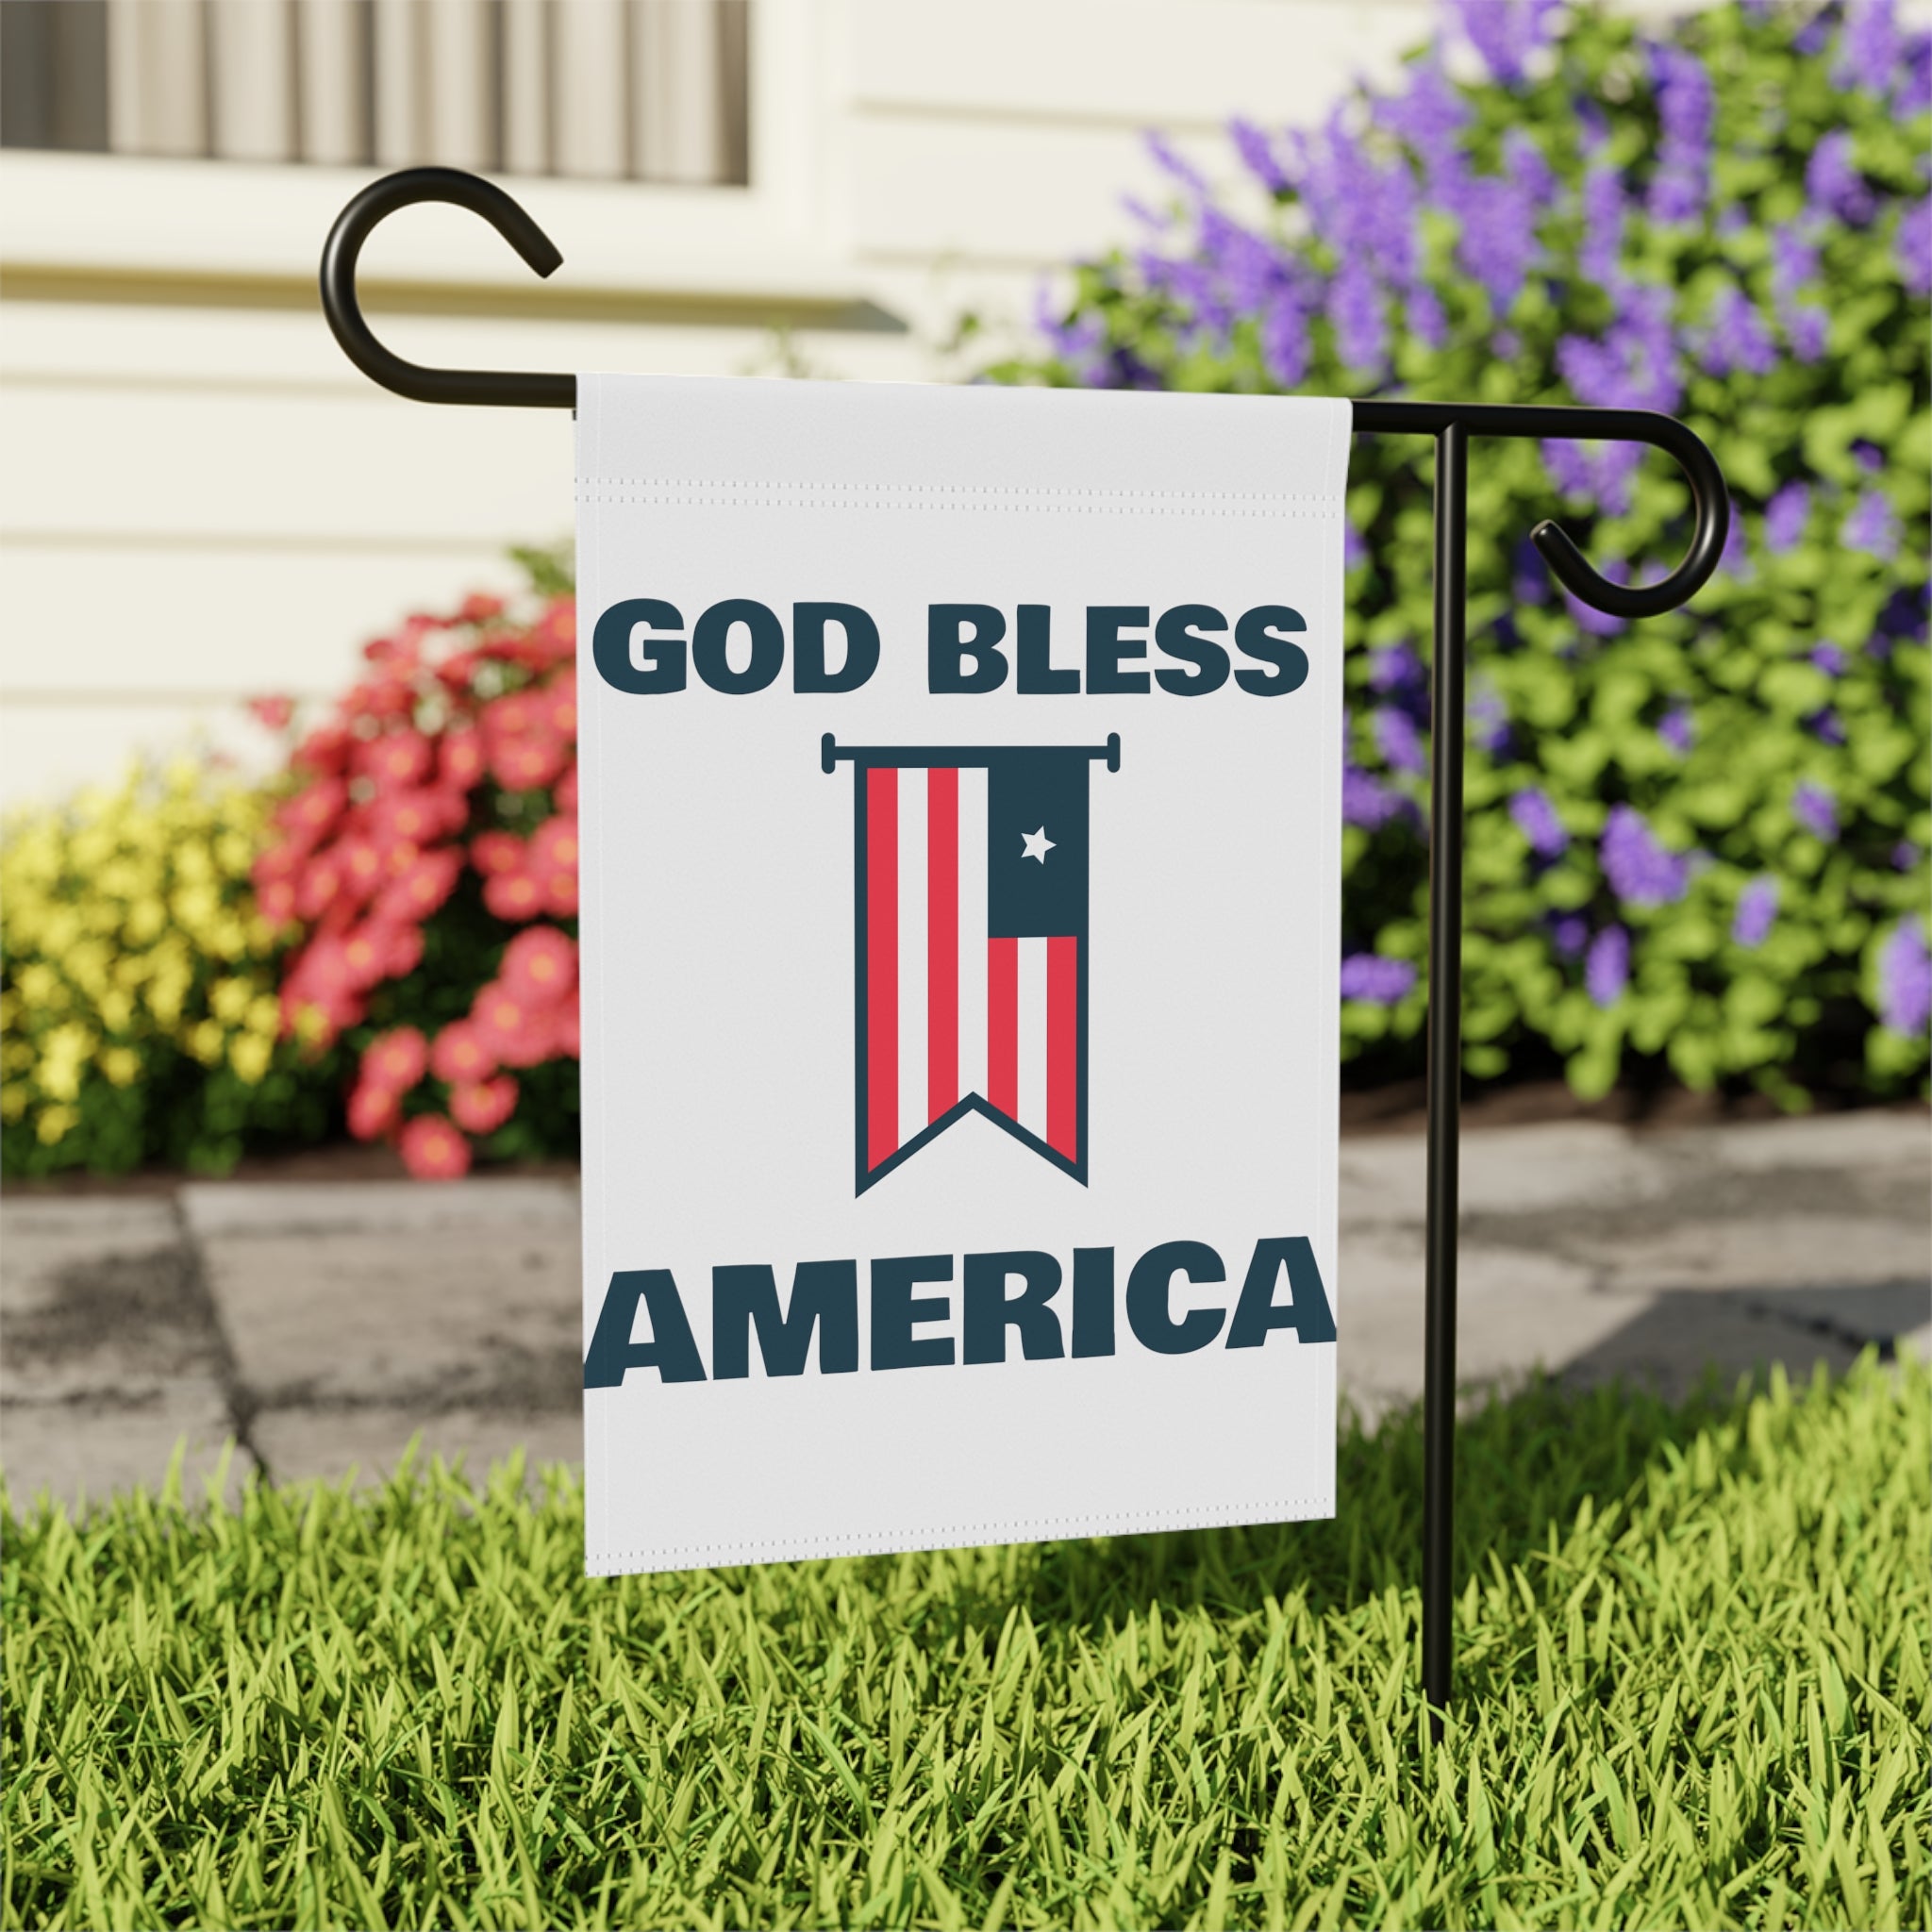 GOD BLESS AMERICA garden flag